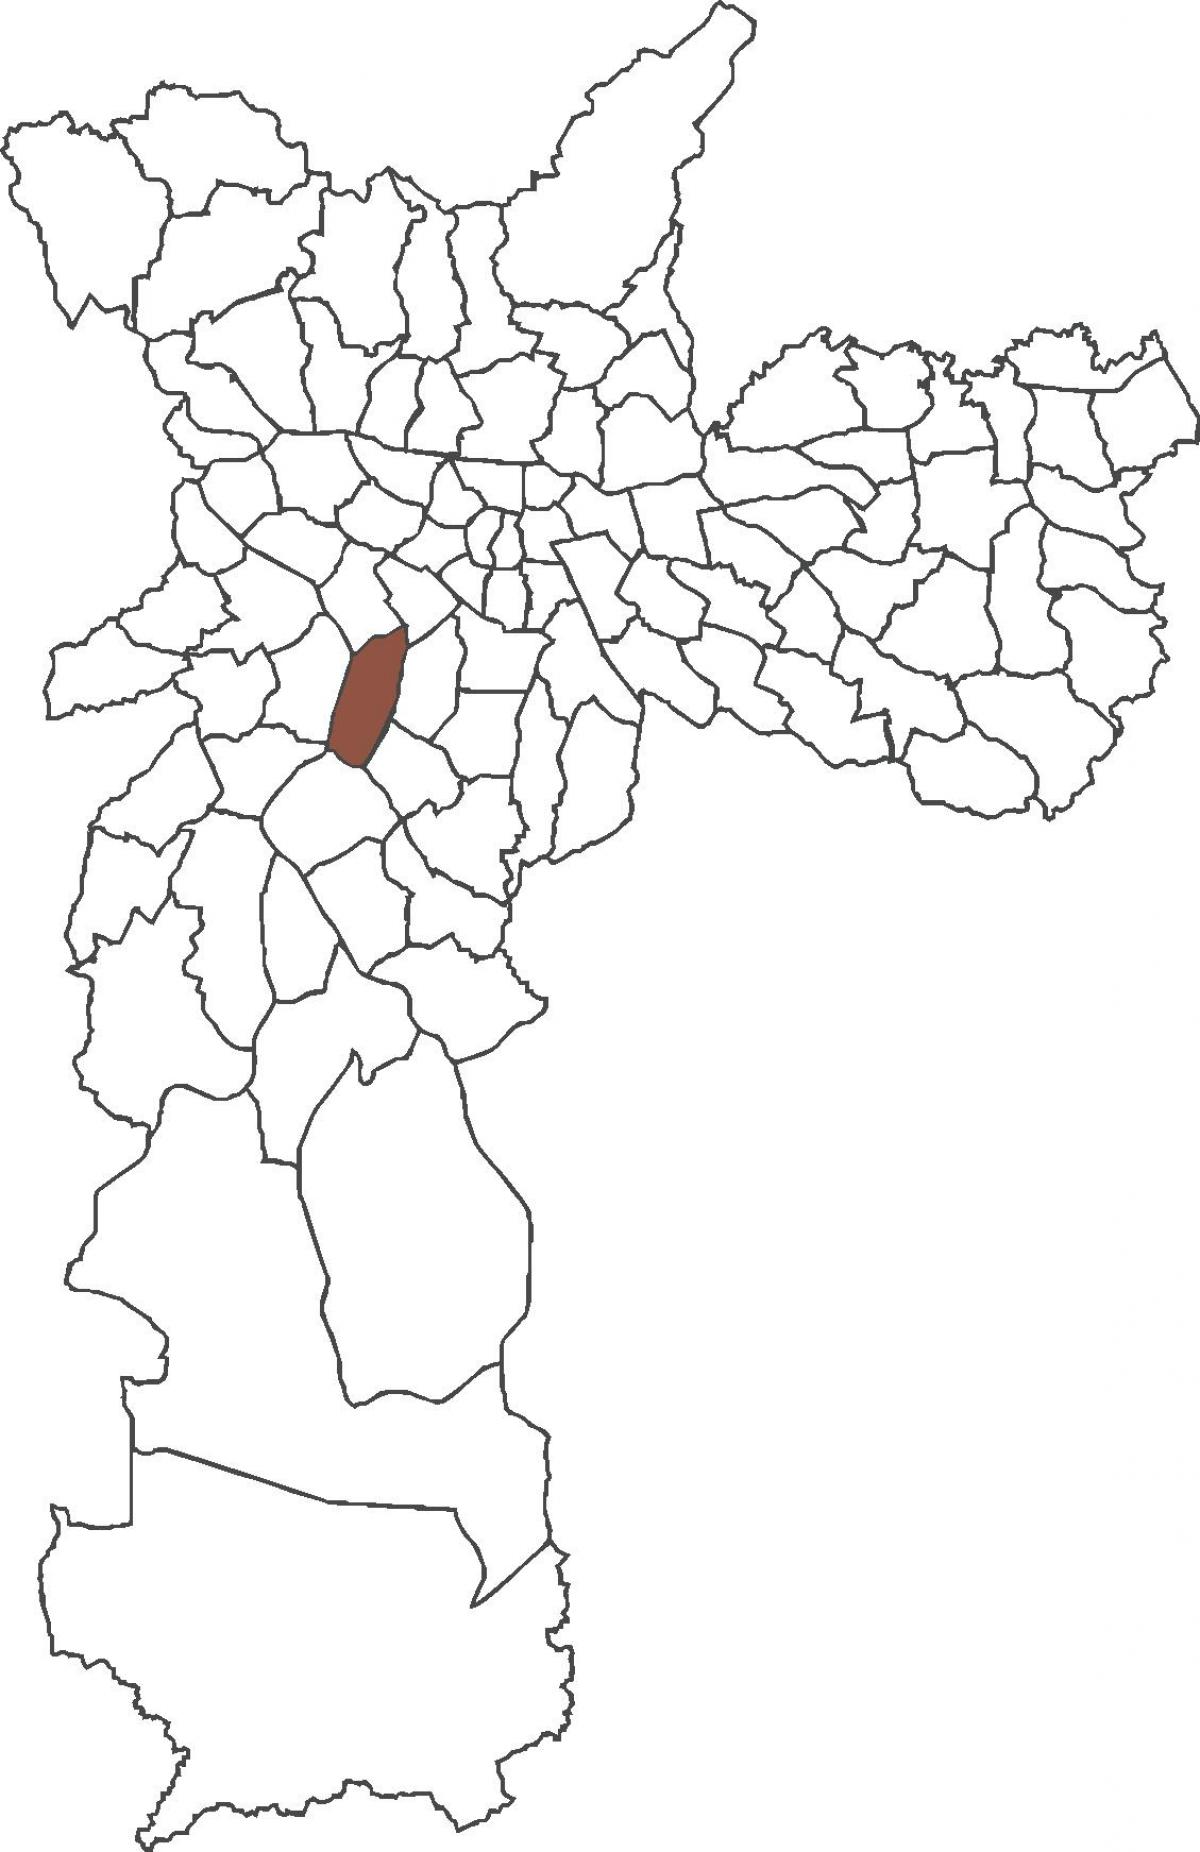 નકશો Itaim બીબી જિલ્લા